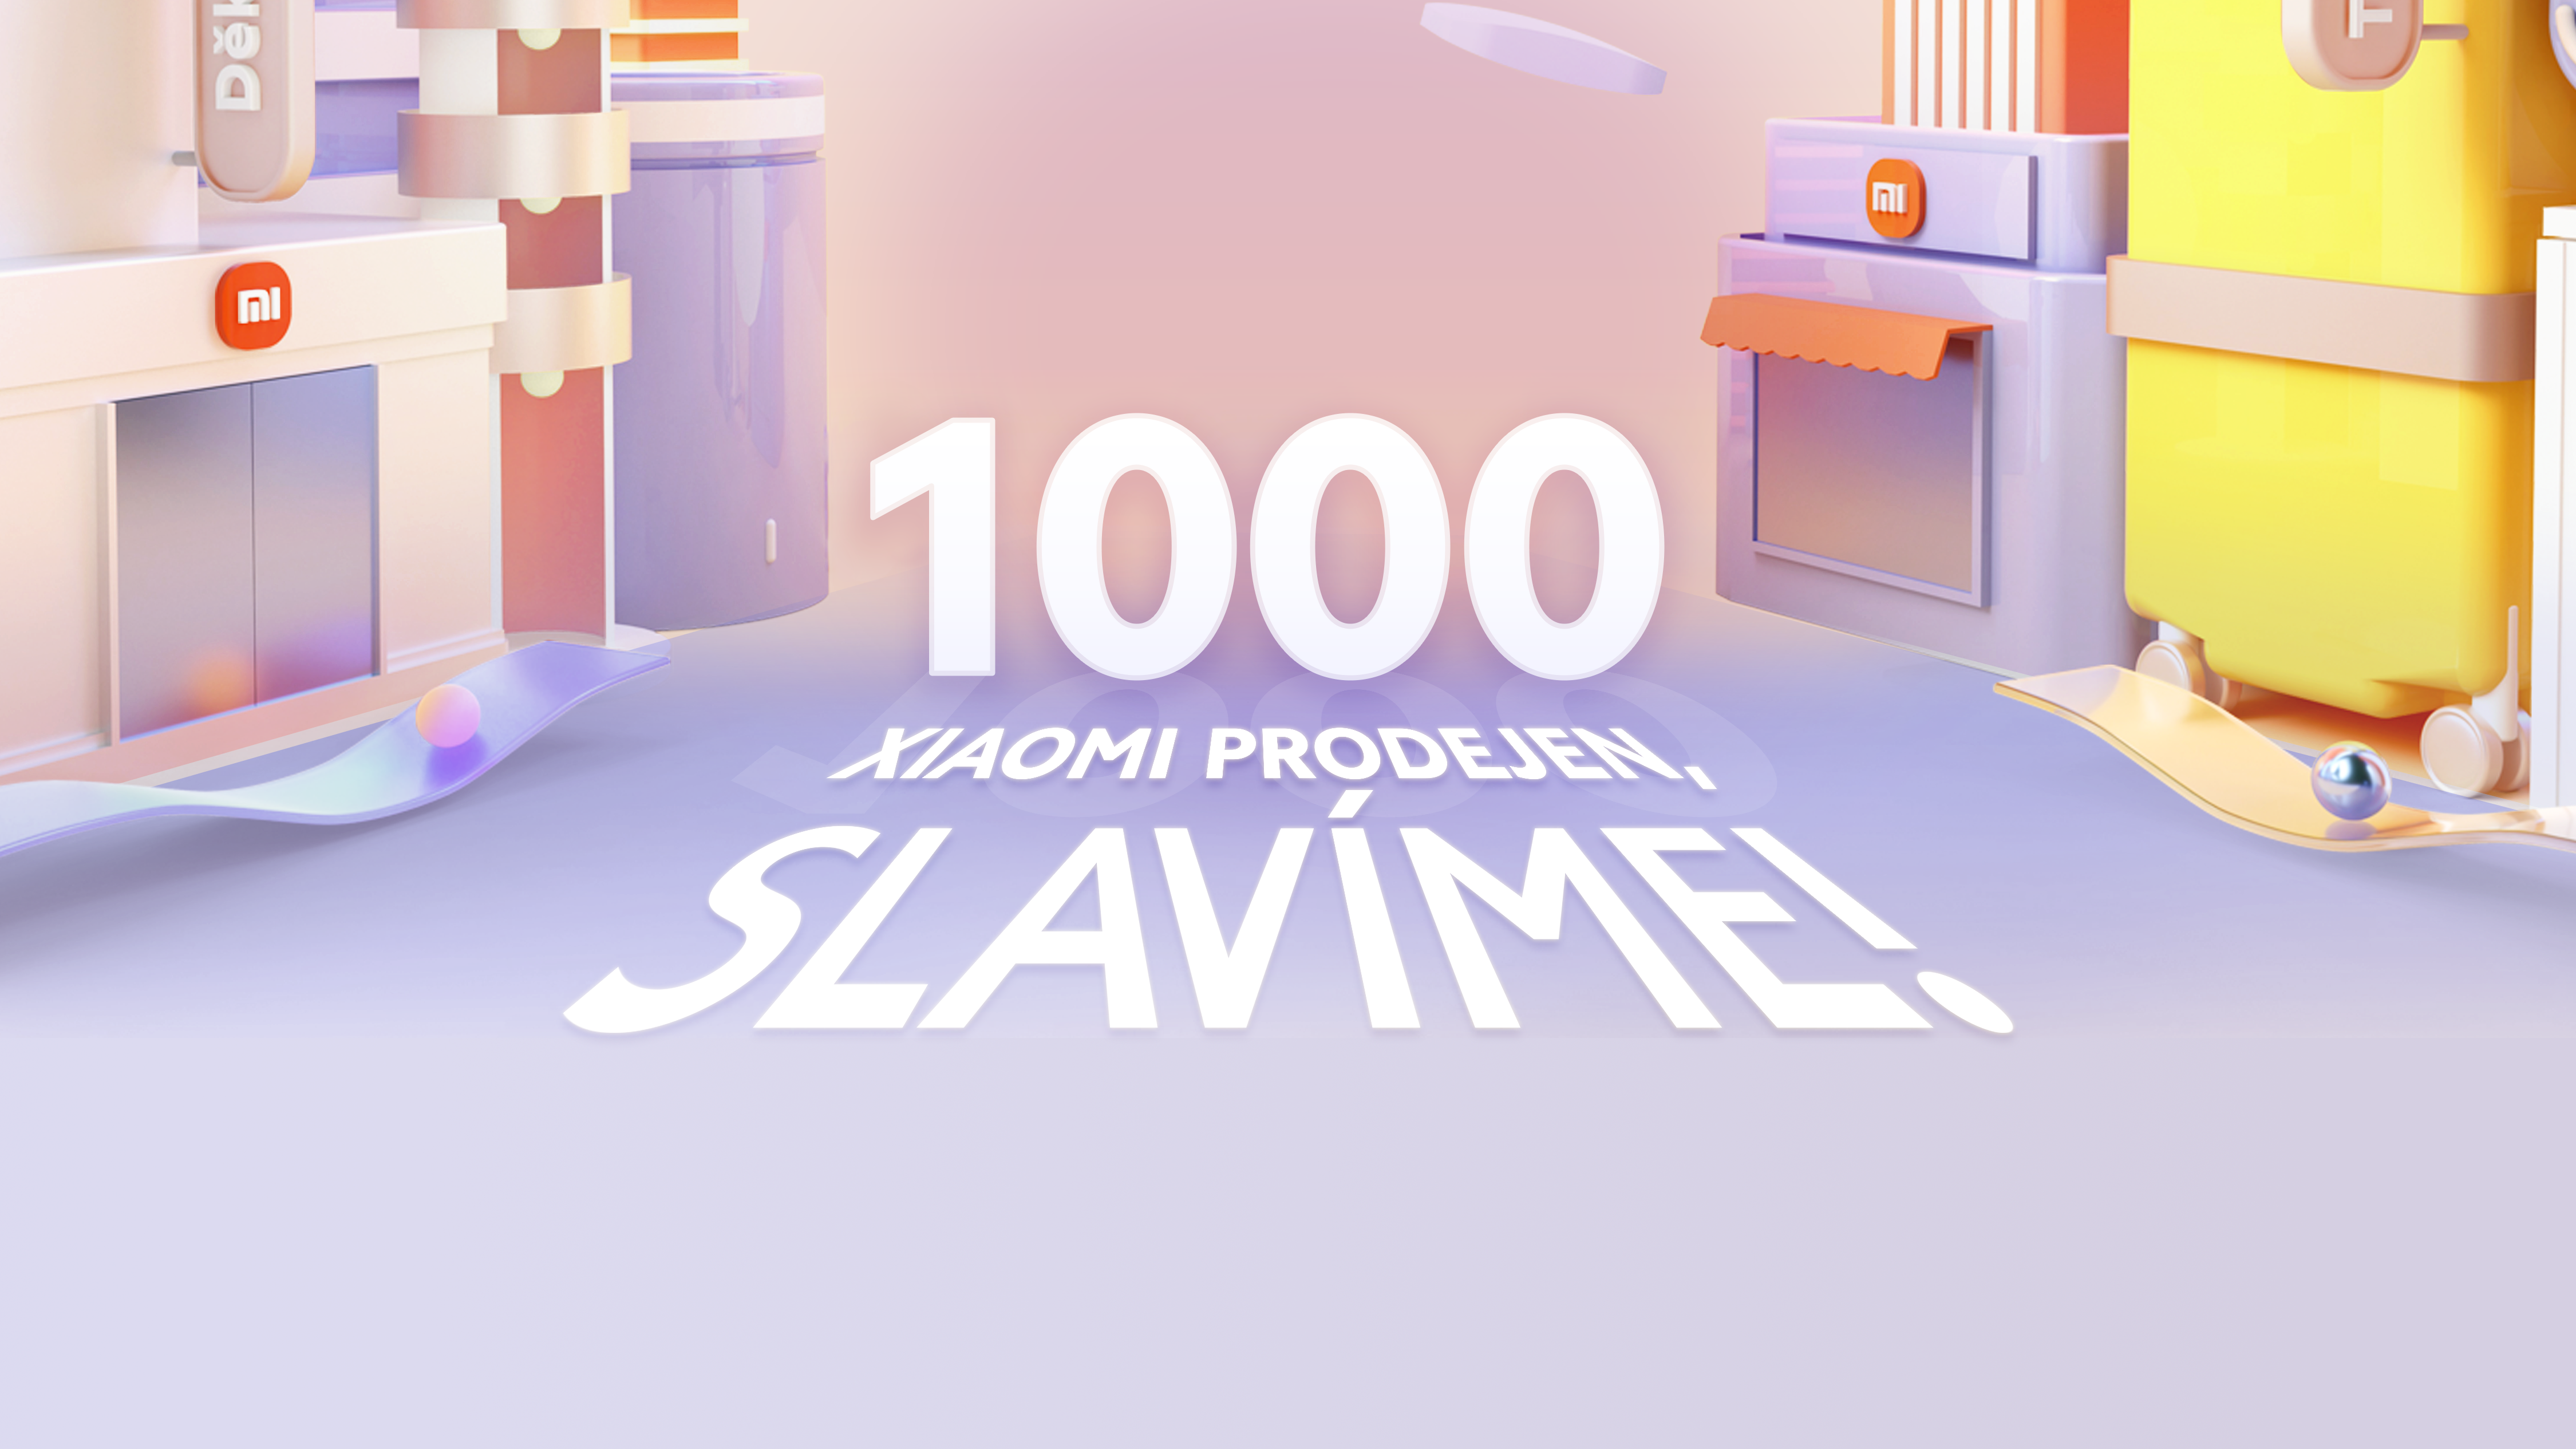 Oslavujeme 1000 prodejen Xiaomi